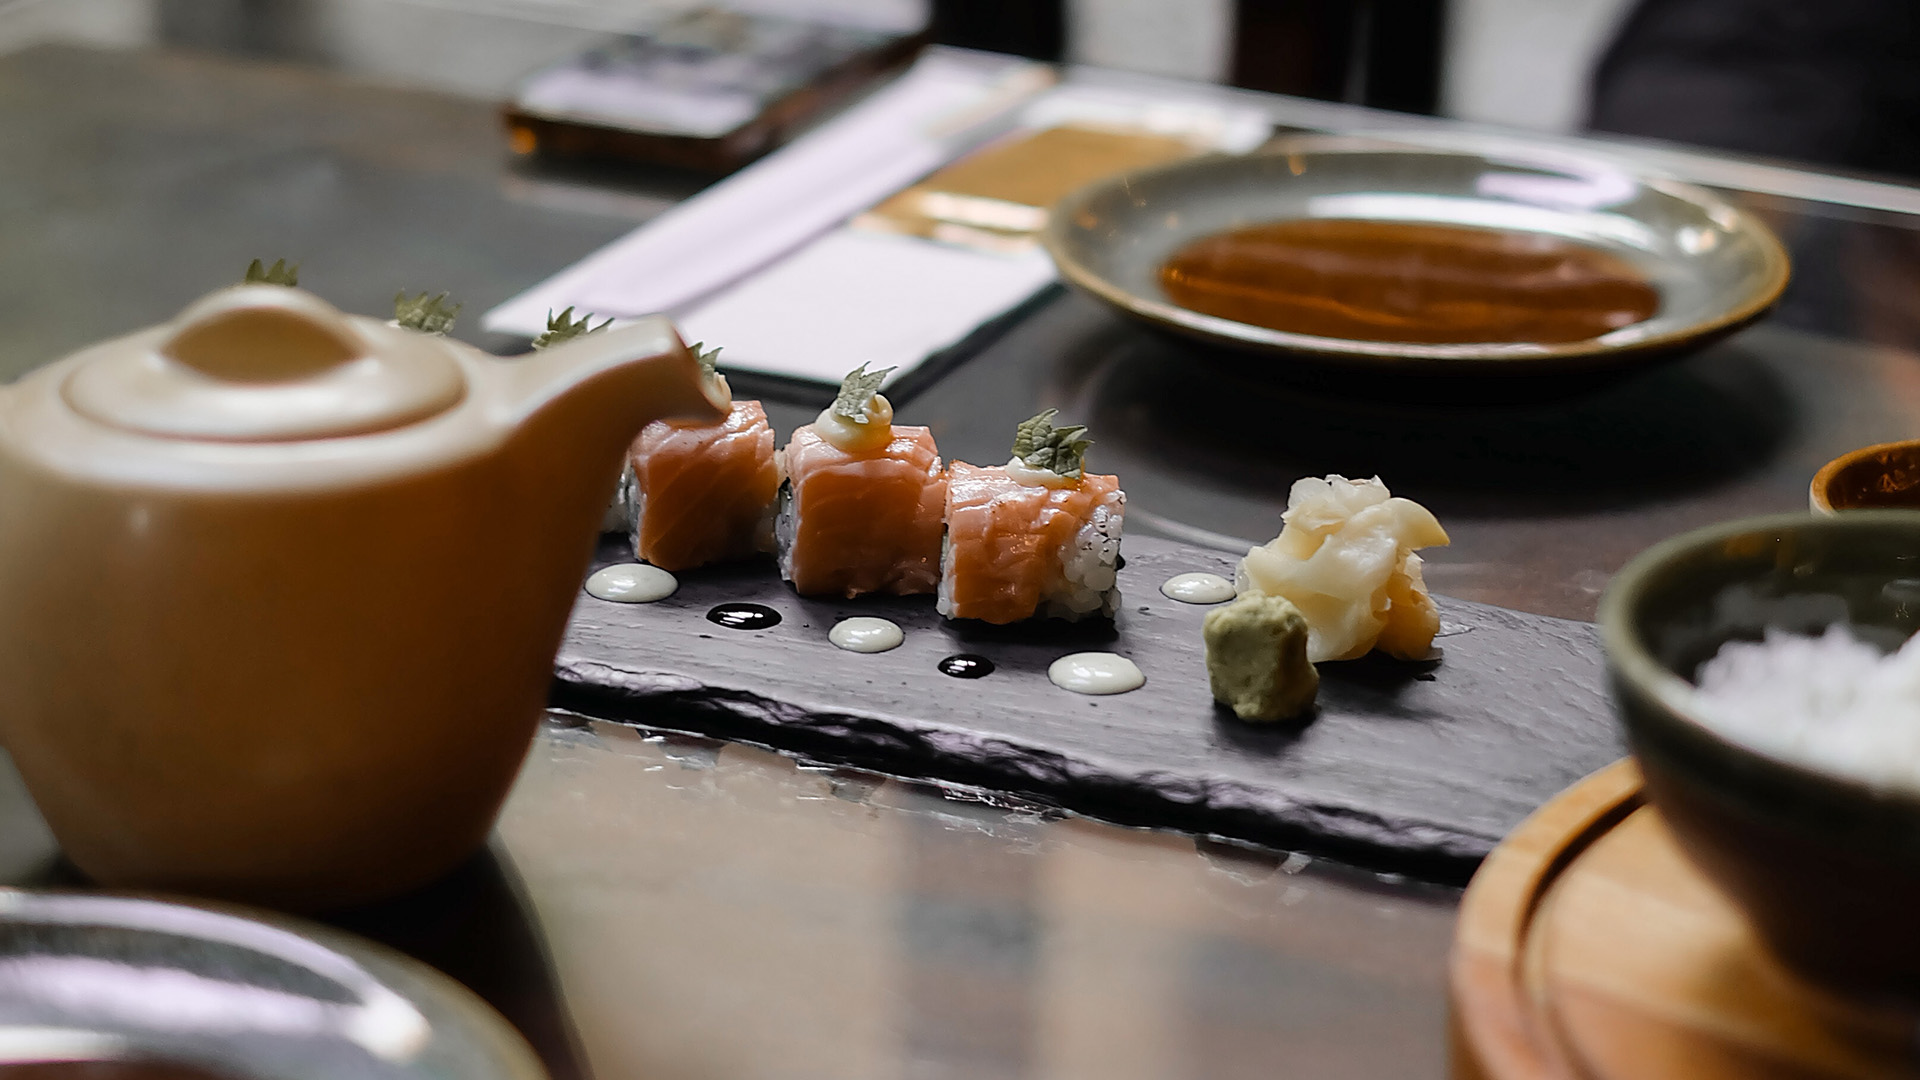 Imagen de 10 restaurantes japoneses en Madrid para frikis del sushi, maki, ramen y, sobre todo, del pescado crudo